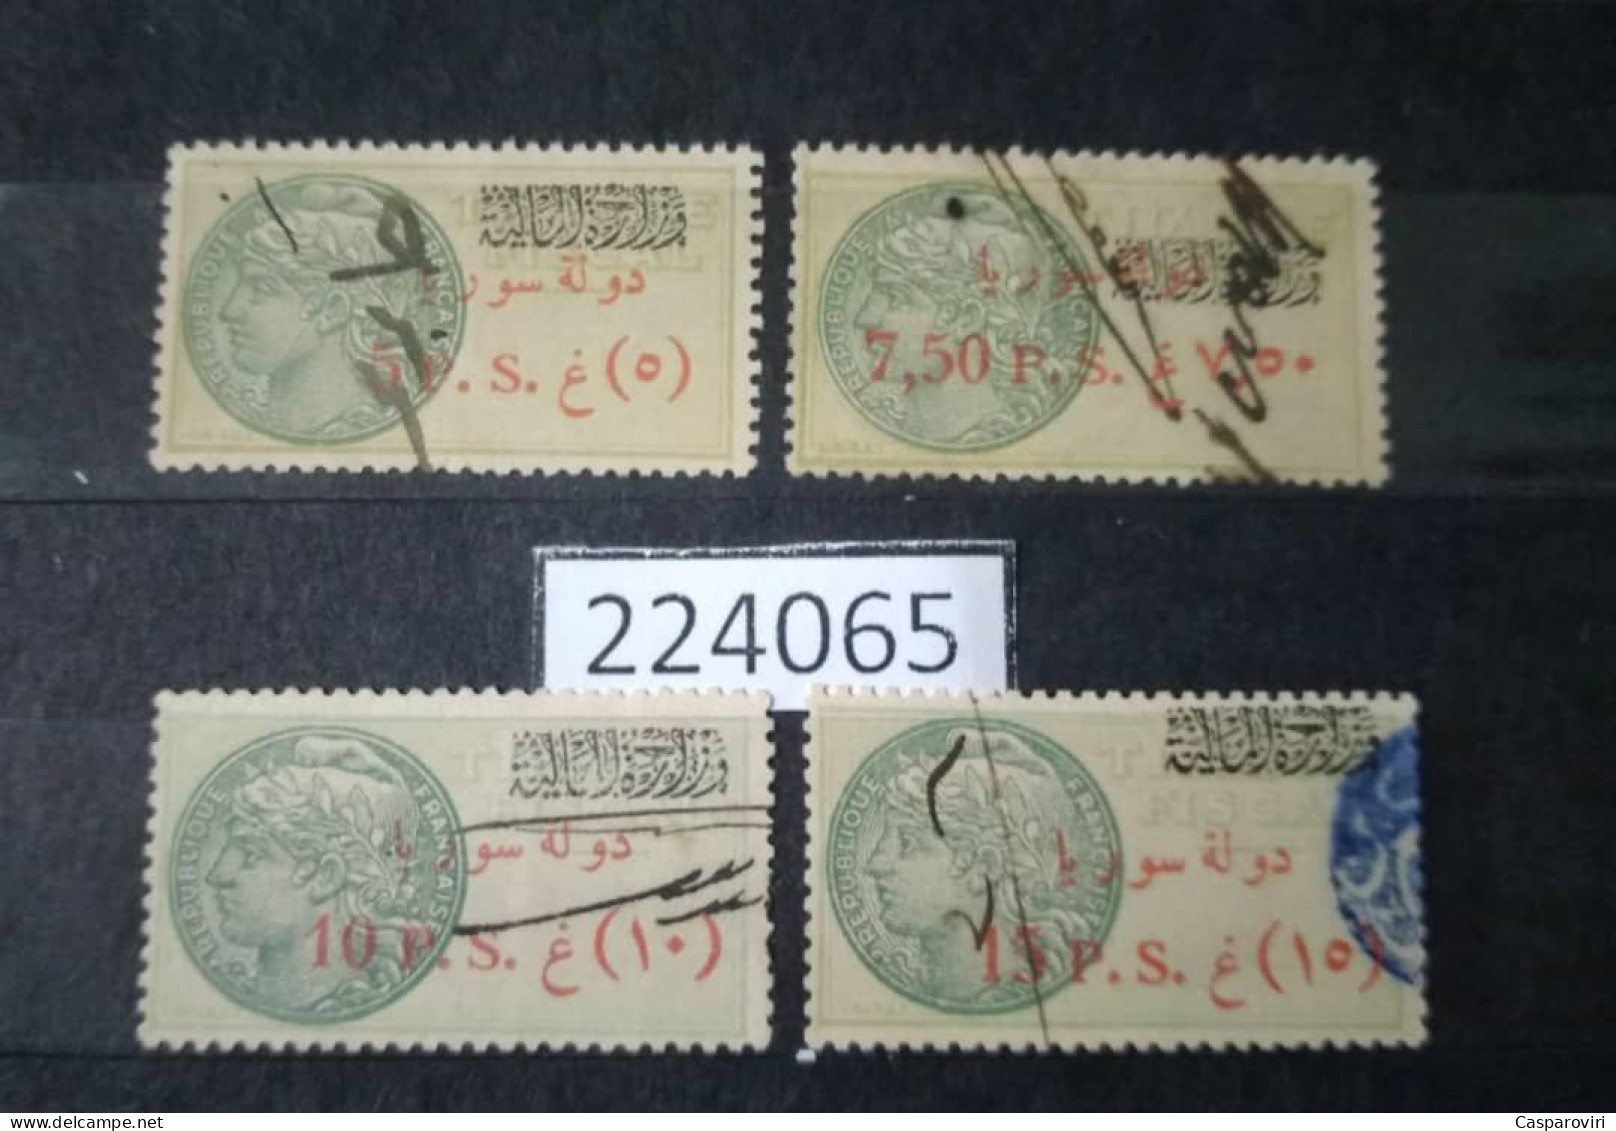 224065; French Colonies; Syria; 4 Revenue French Stamps 5, 7.5, 10,15 P; Rouge Ovpt Etat De Syrie; Ministère Des Finance - Oblitérés